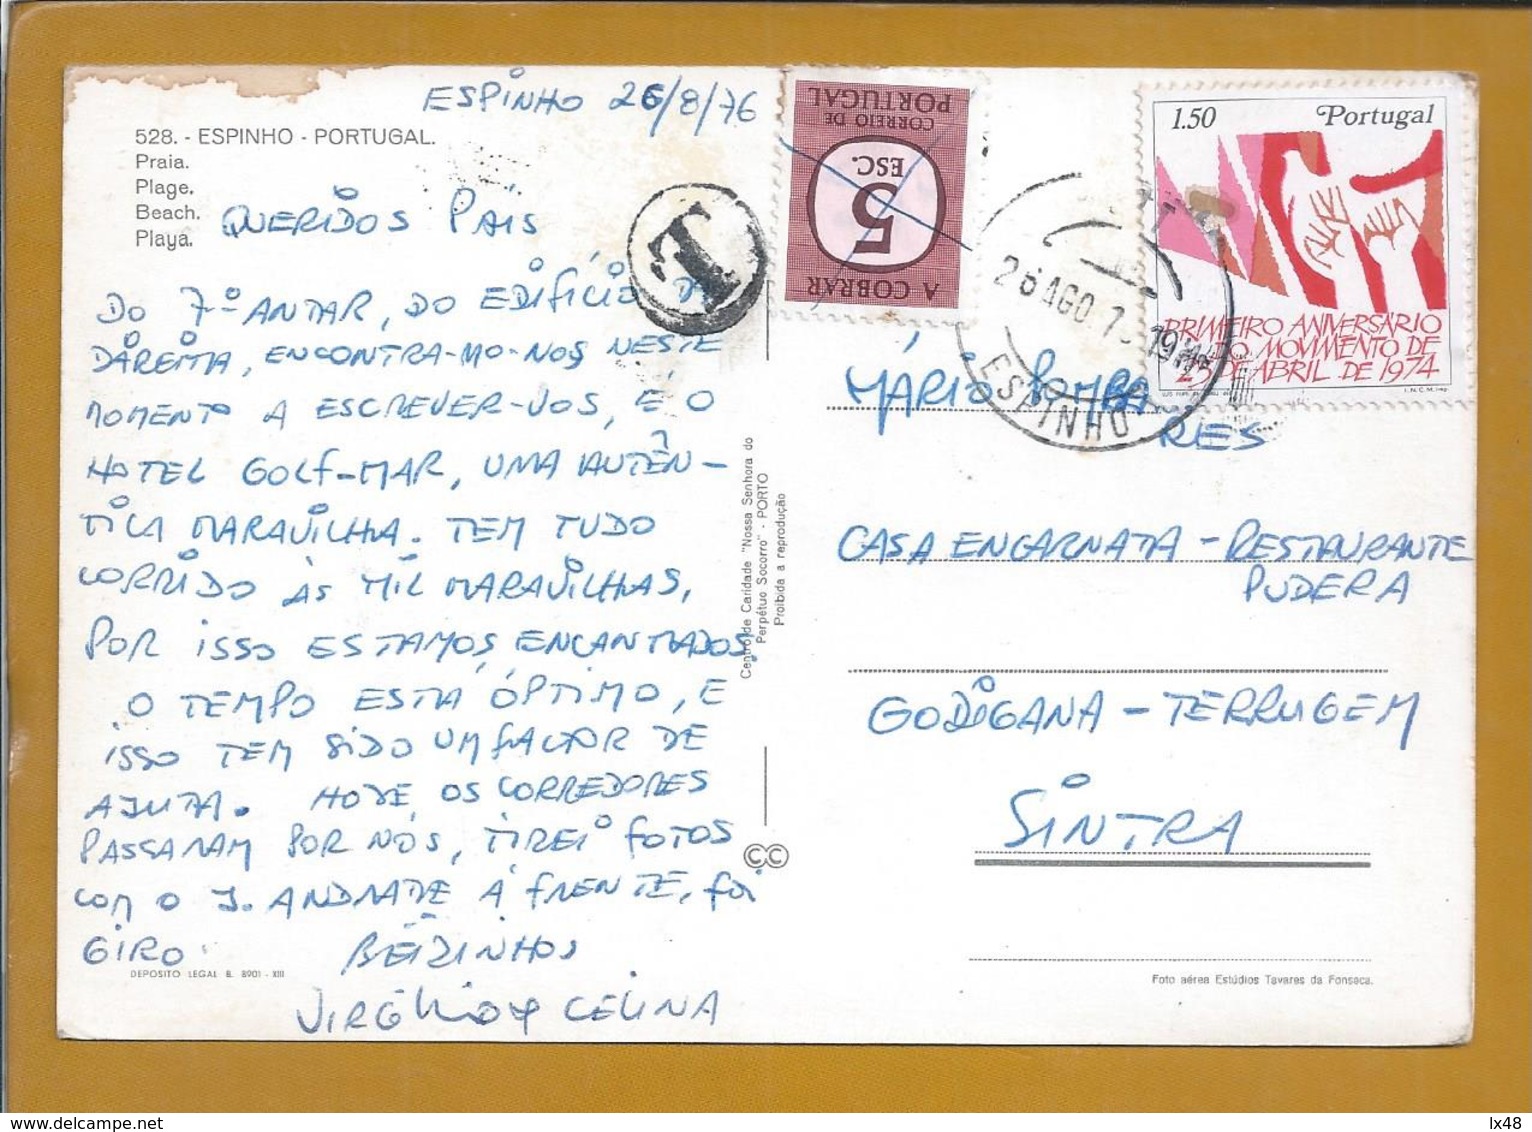 Postcard Fined Circled 1975, Espinho. Stamp Revolution April 25th. Postal Porteado E Expedido De Espinho / Terrugem - Covers & Documents